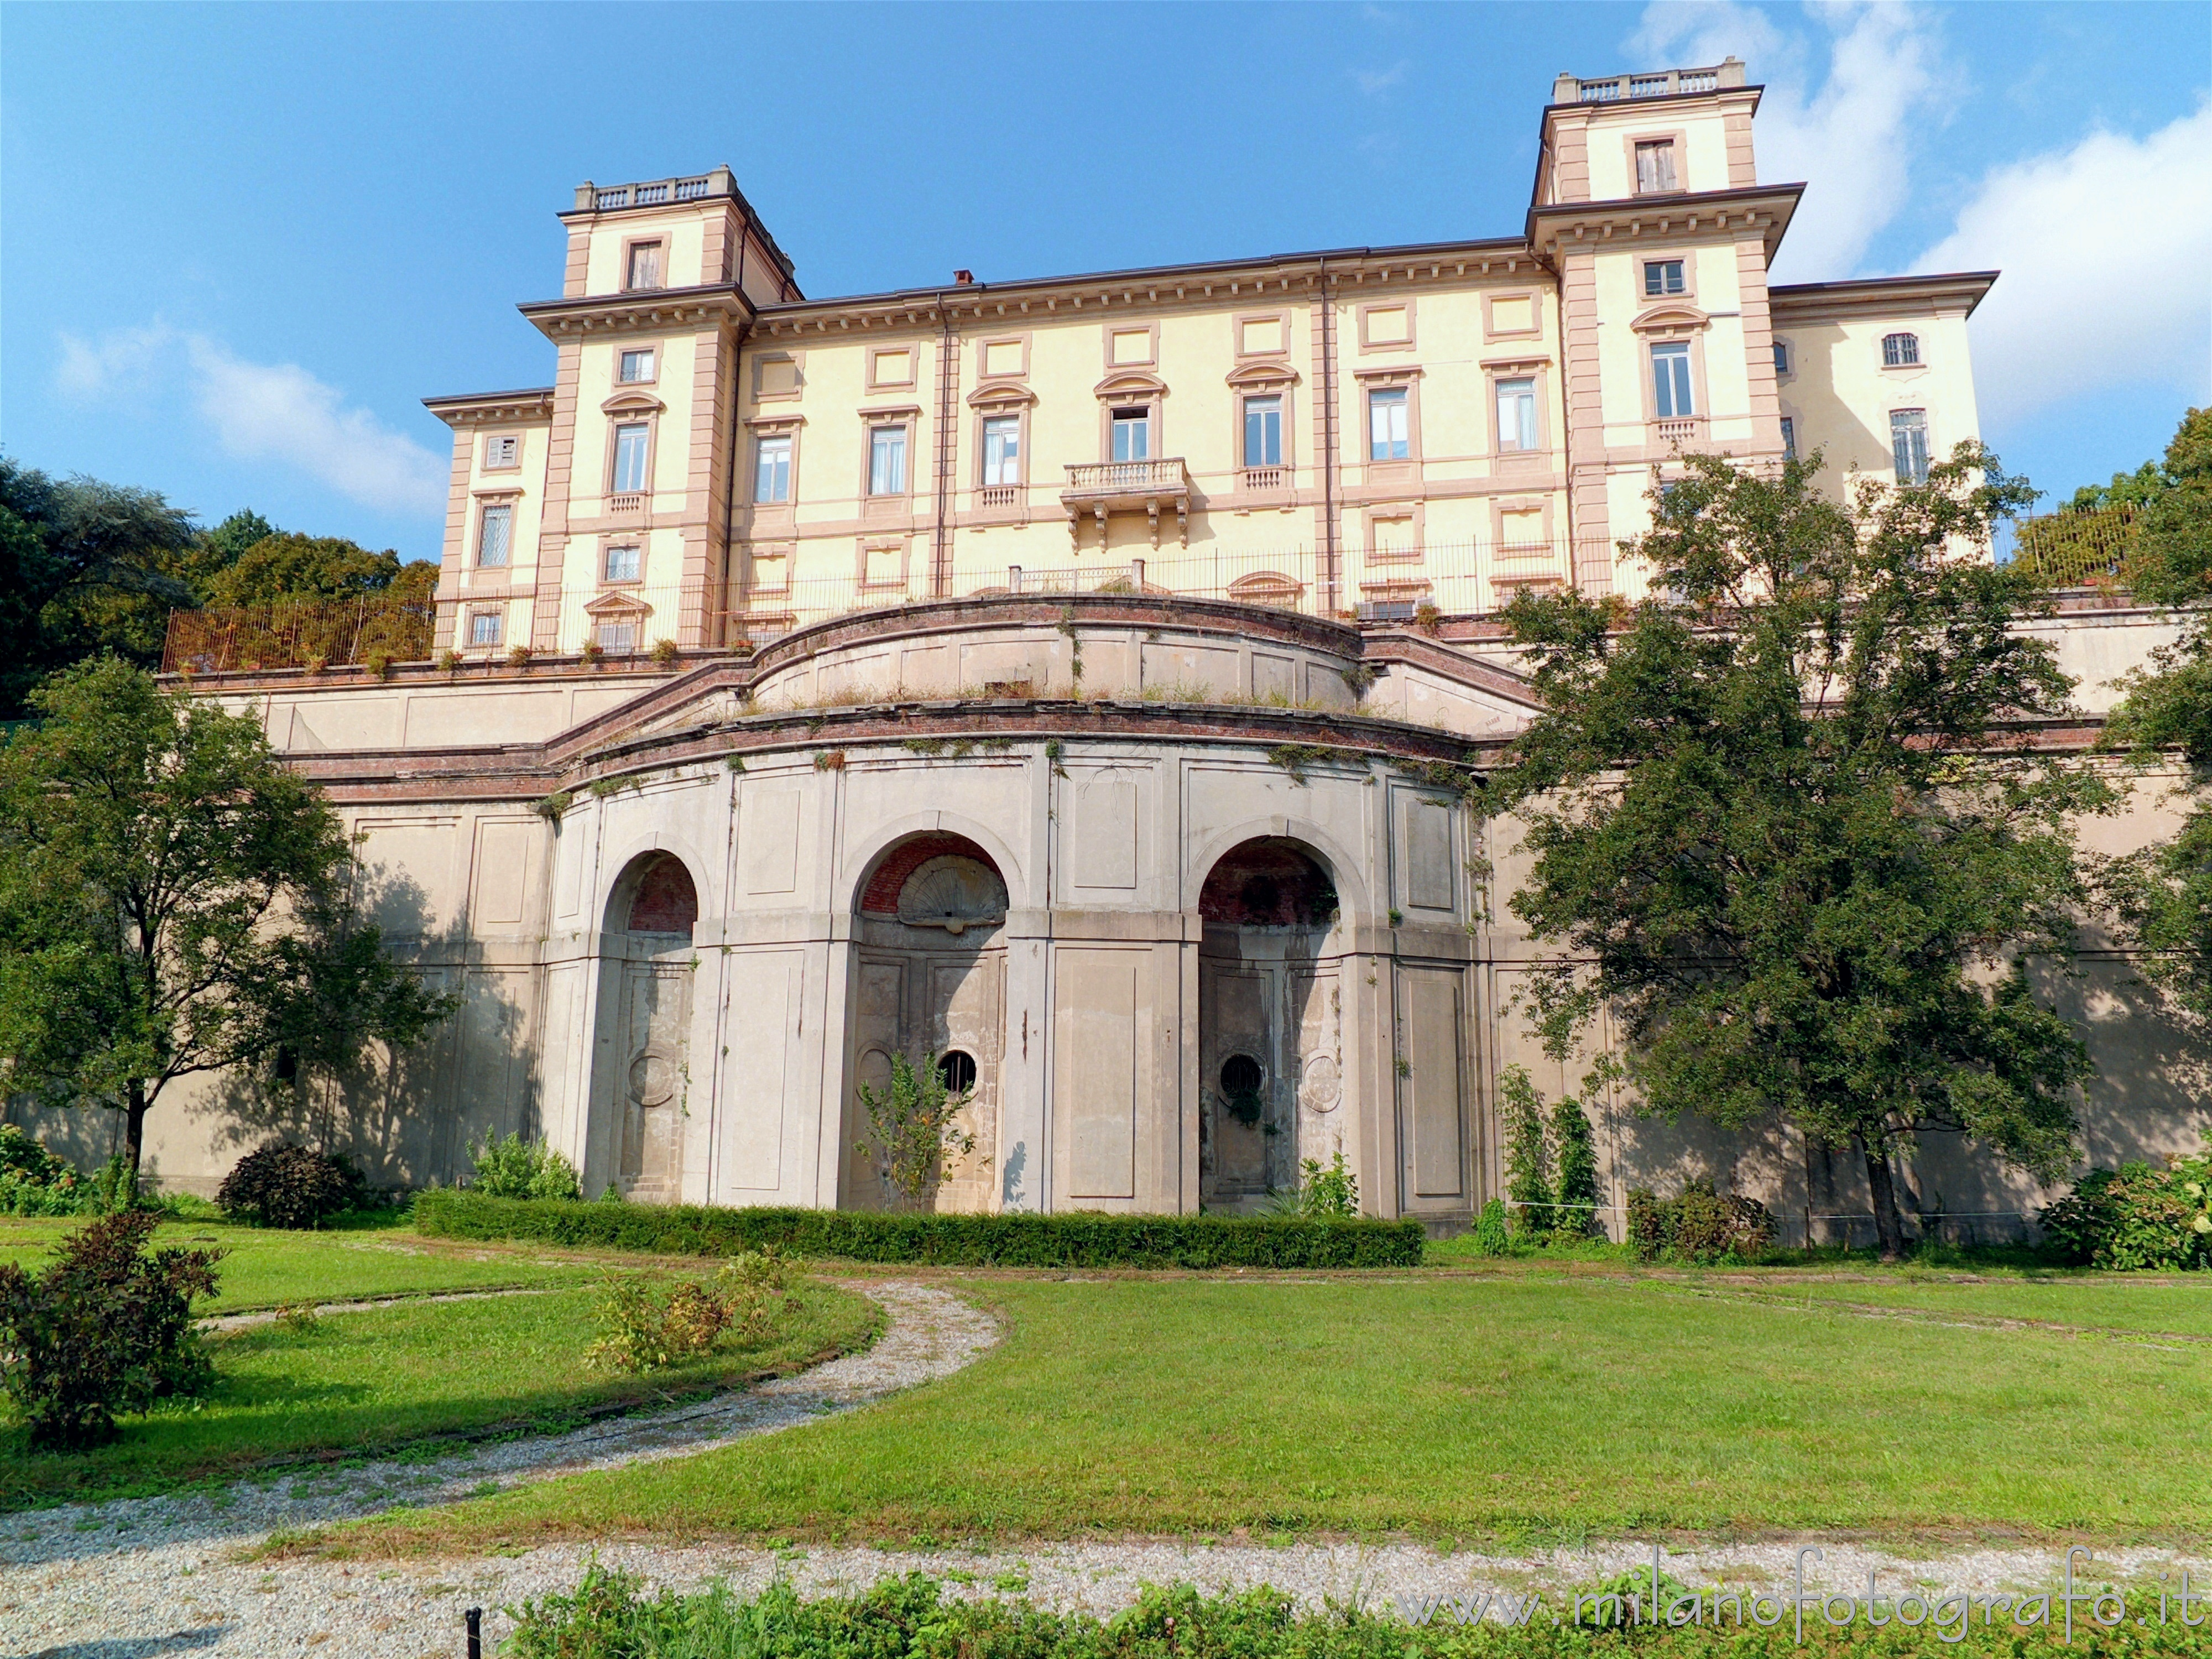 Limbiate (Monza e Brianza, Italy): Facade toward the park of Villa Pusterla Arconati Crivelli - Limbiate (Monza e Brianza, Italy)